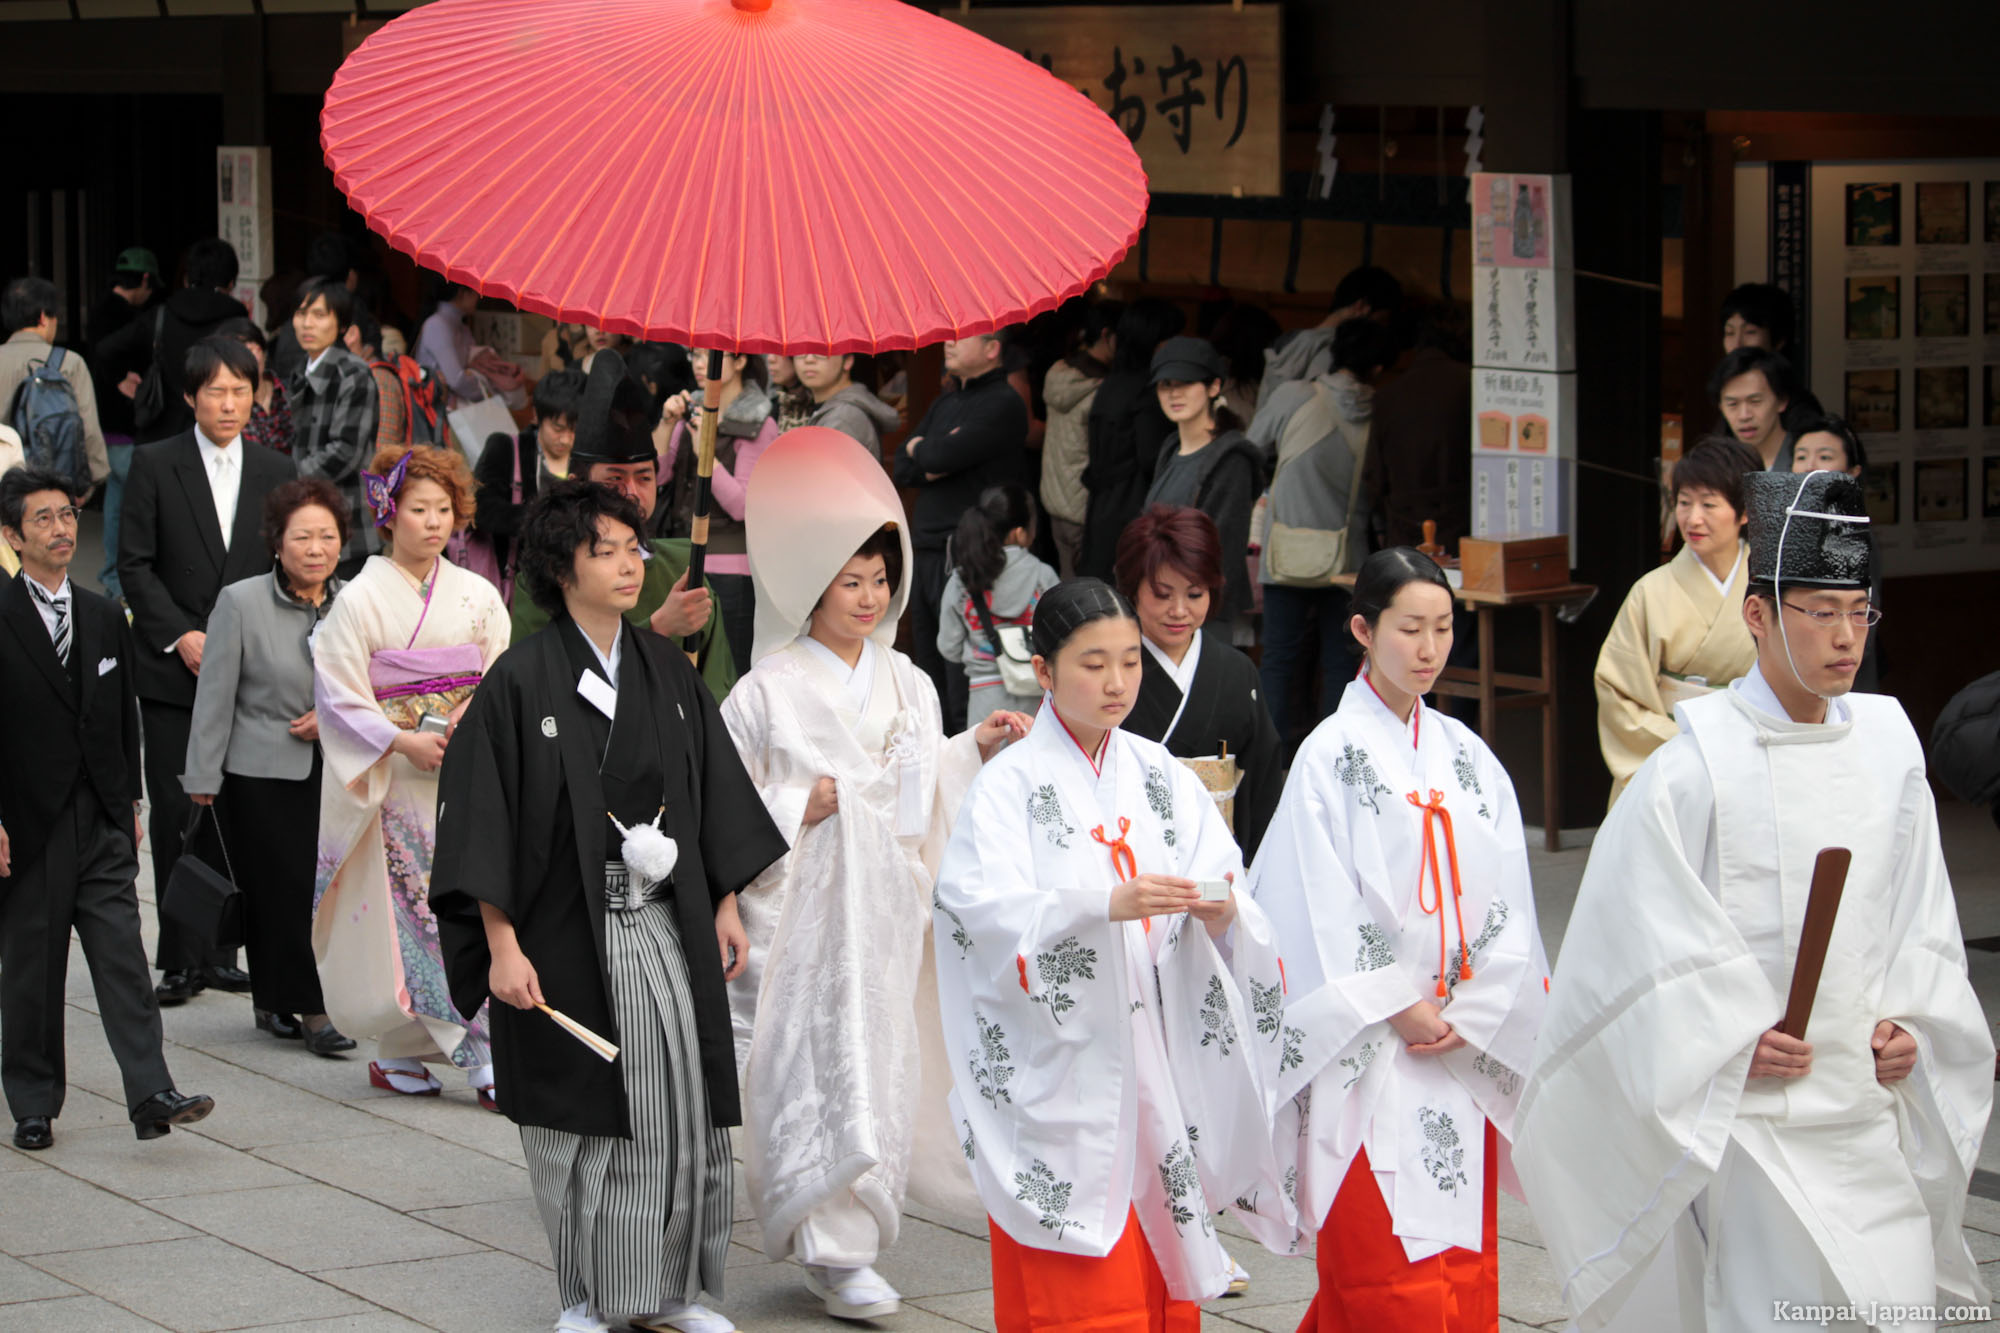 Orang Tua di Jepang Menghadiri Acara Perjodohan Untuk Mencari Jodoh Bagi Anaknya